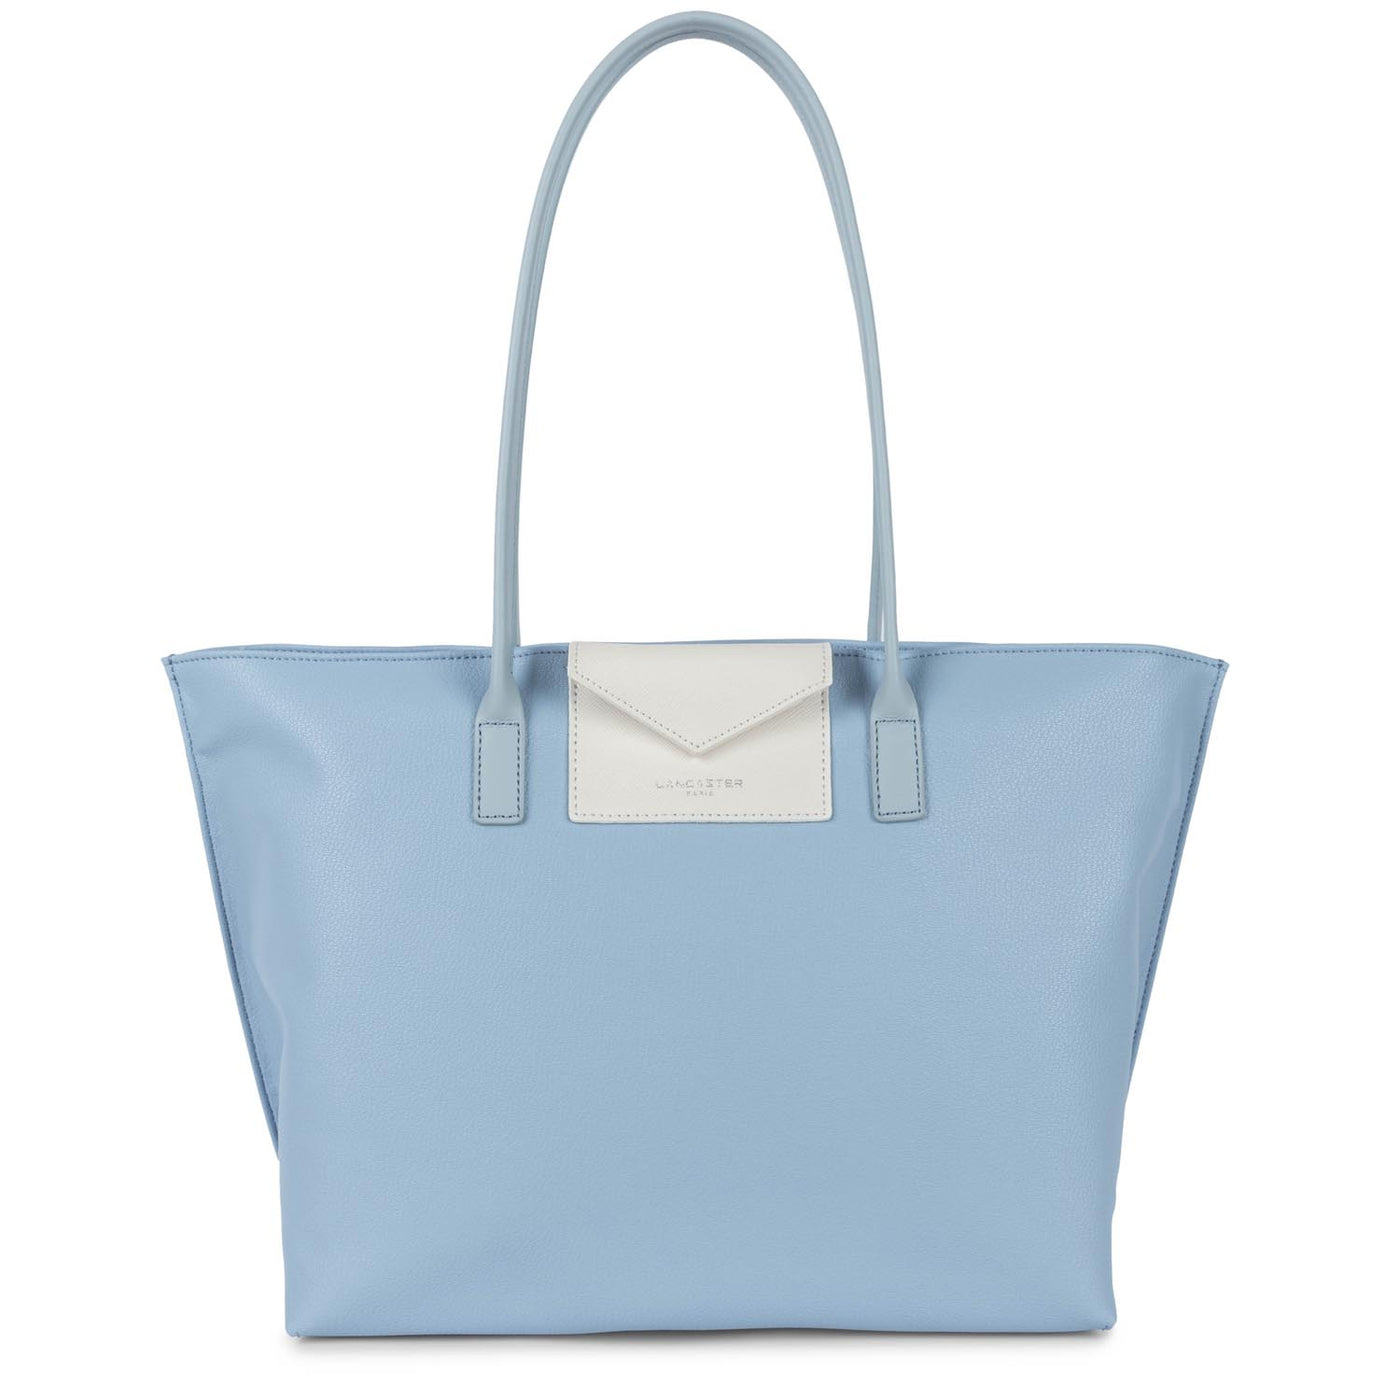 grand sac cabas épaule - maya #couleur_bleu-ciel-ivoire-bleu-cendre